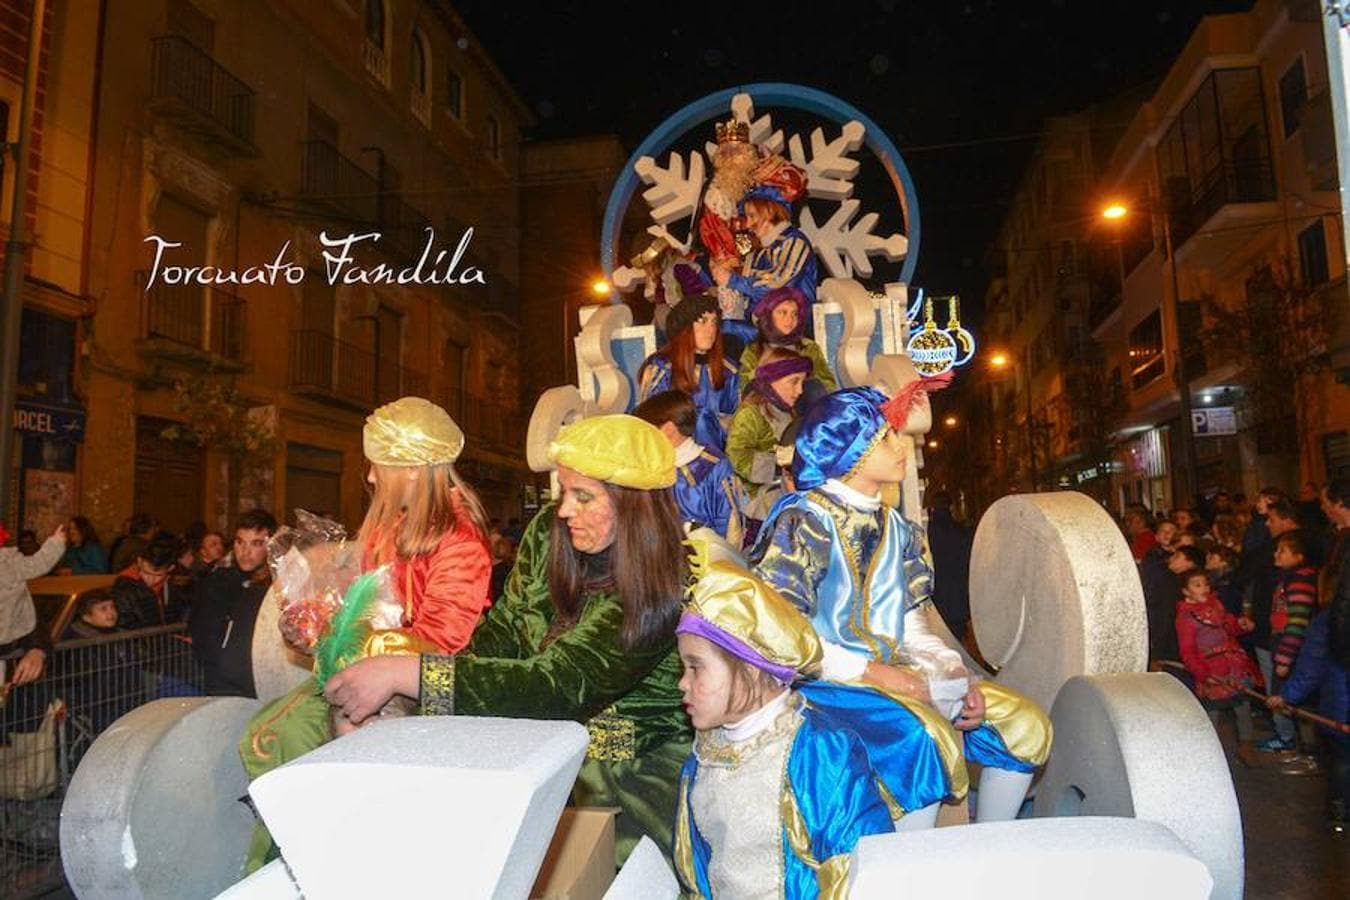 La magia visita Guadix en la noche de Reyes